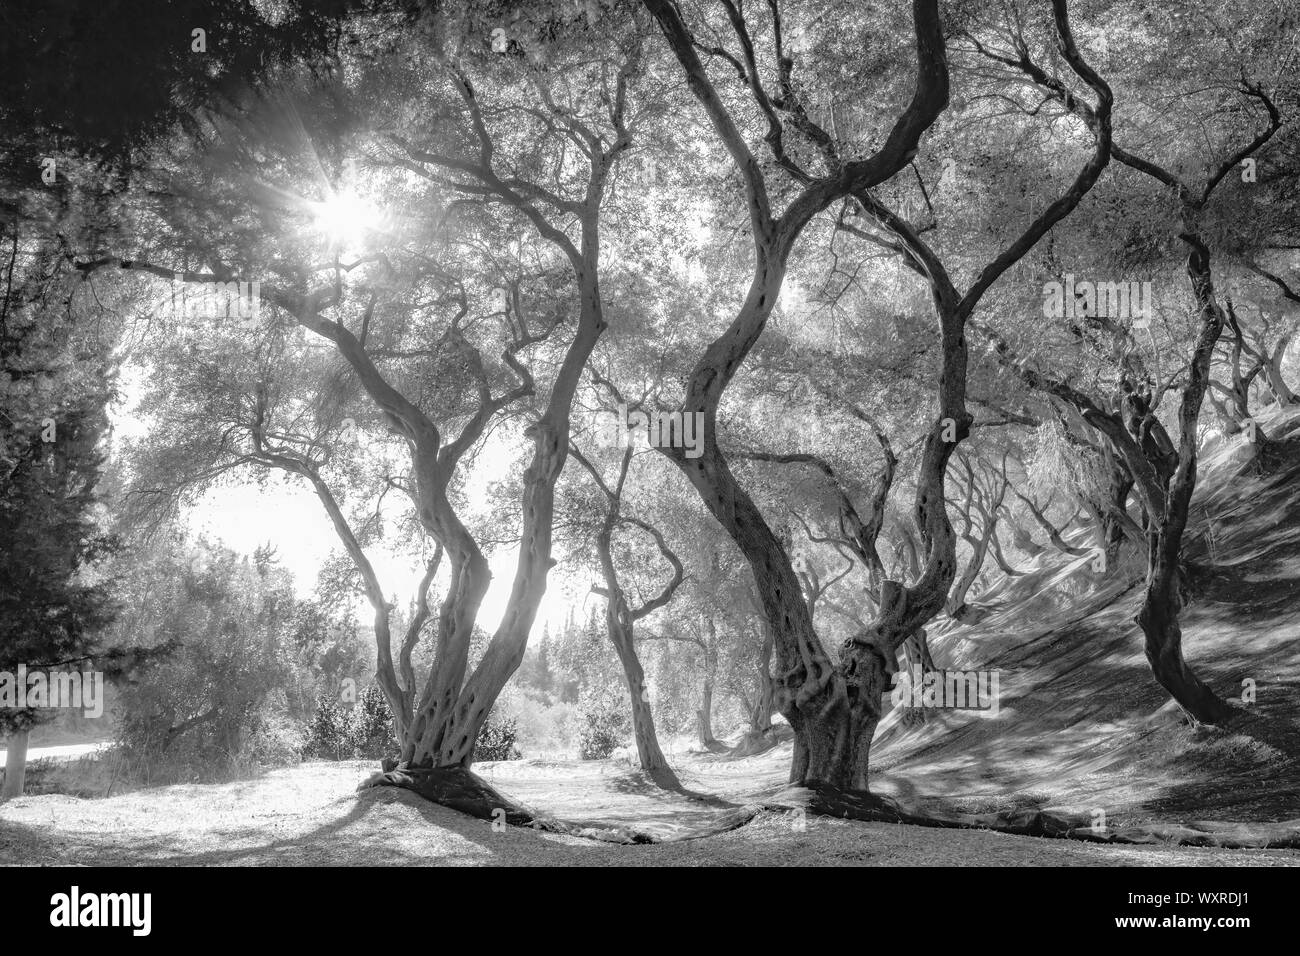 Champ d'oliviers, arbres aux troncs tordus, Ombres et lumière jouer sous les arbres très denses avec des couronnes. Photo en noir et blanc. Banque D'Images